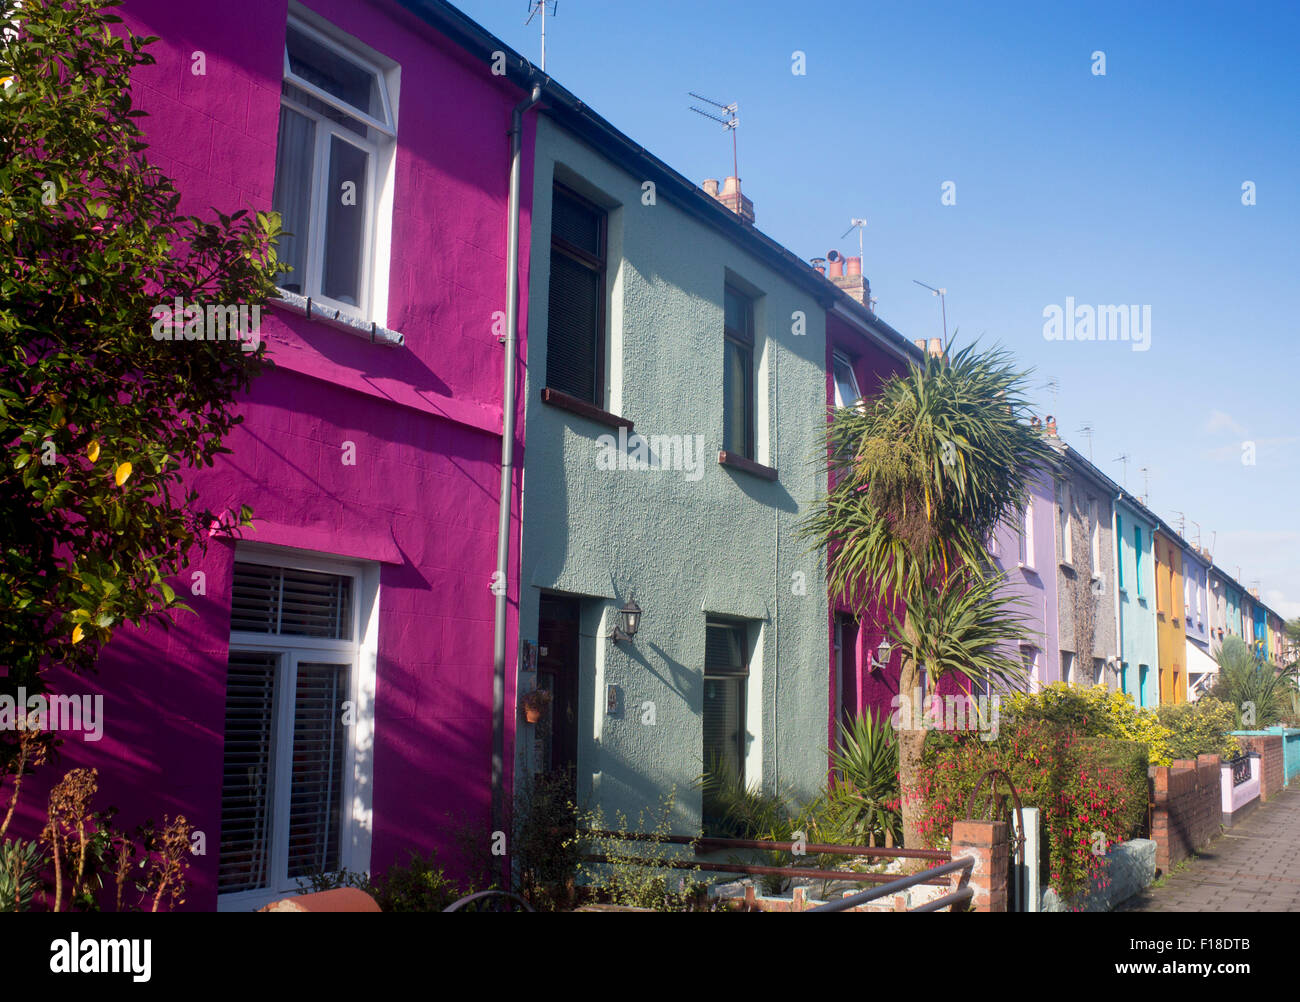 Verniciato colorato terrazza case a schiera cottages Roath Cardiff Wales UK Foto Stock